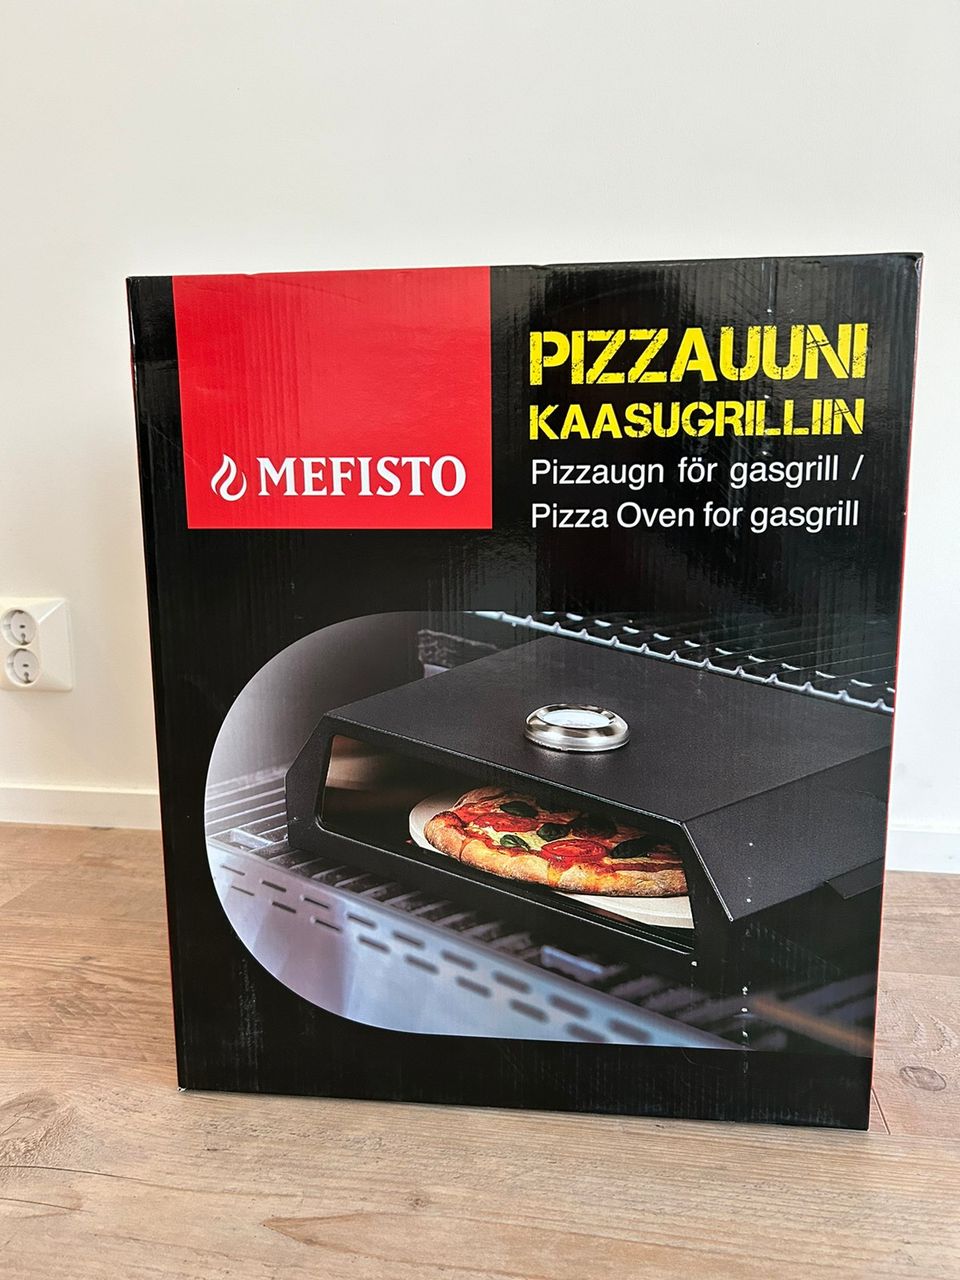 Uusi Mefisto pizzauuni grilliin